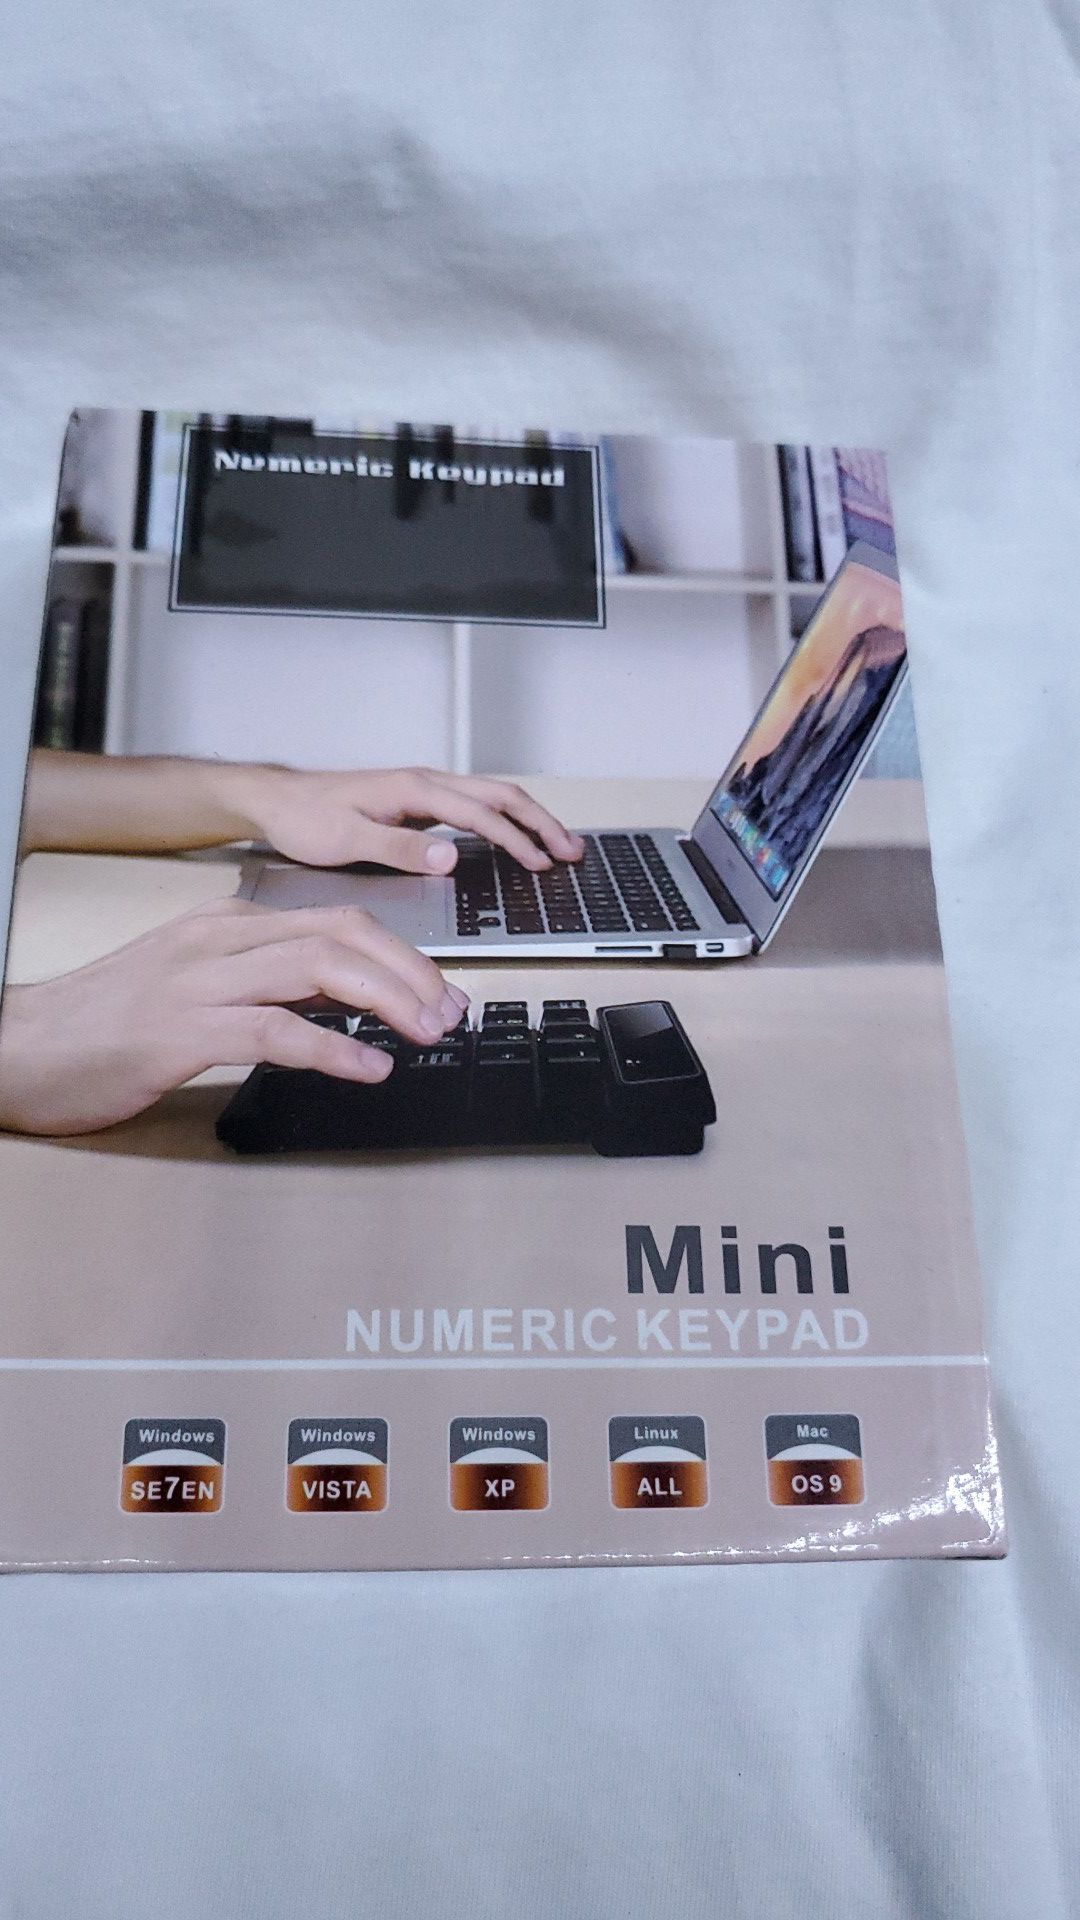 SR Wireless Numeric Keypad Nano USB Mini Numpad Number Pad Keyboard for Desktop Laptop PC Notebook Black